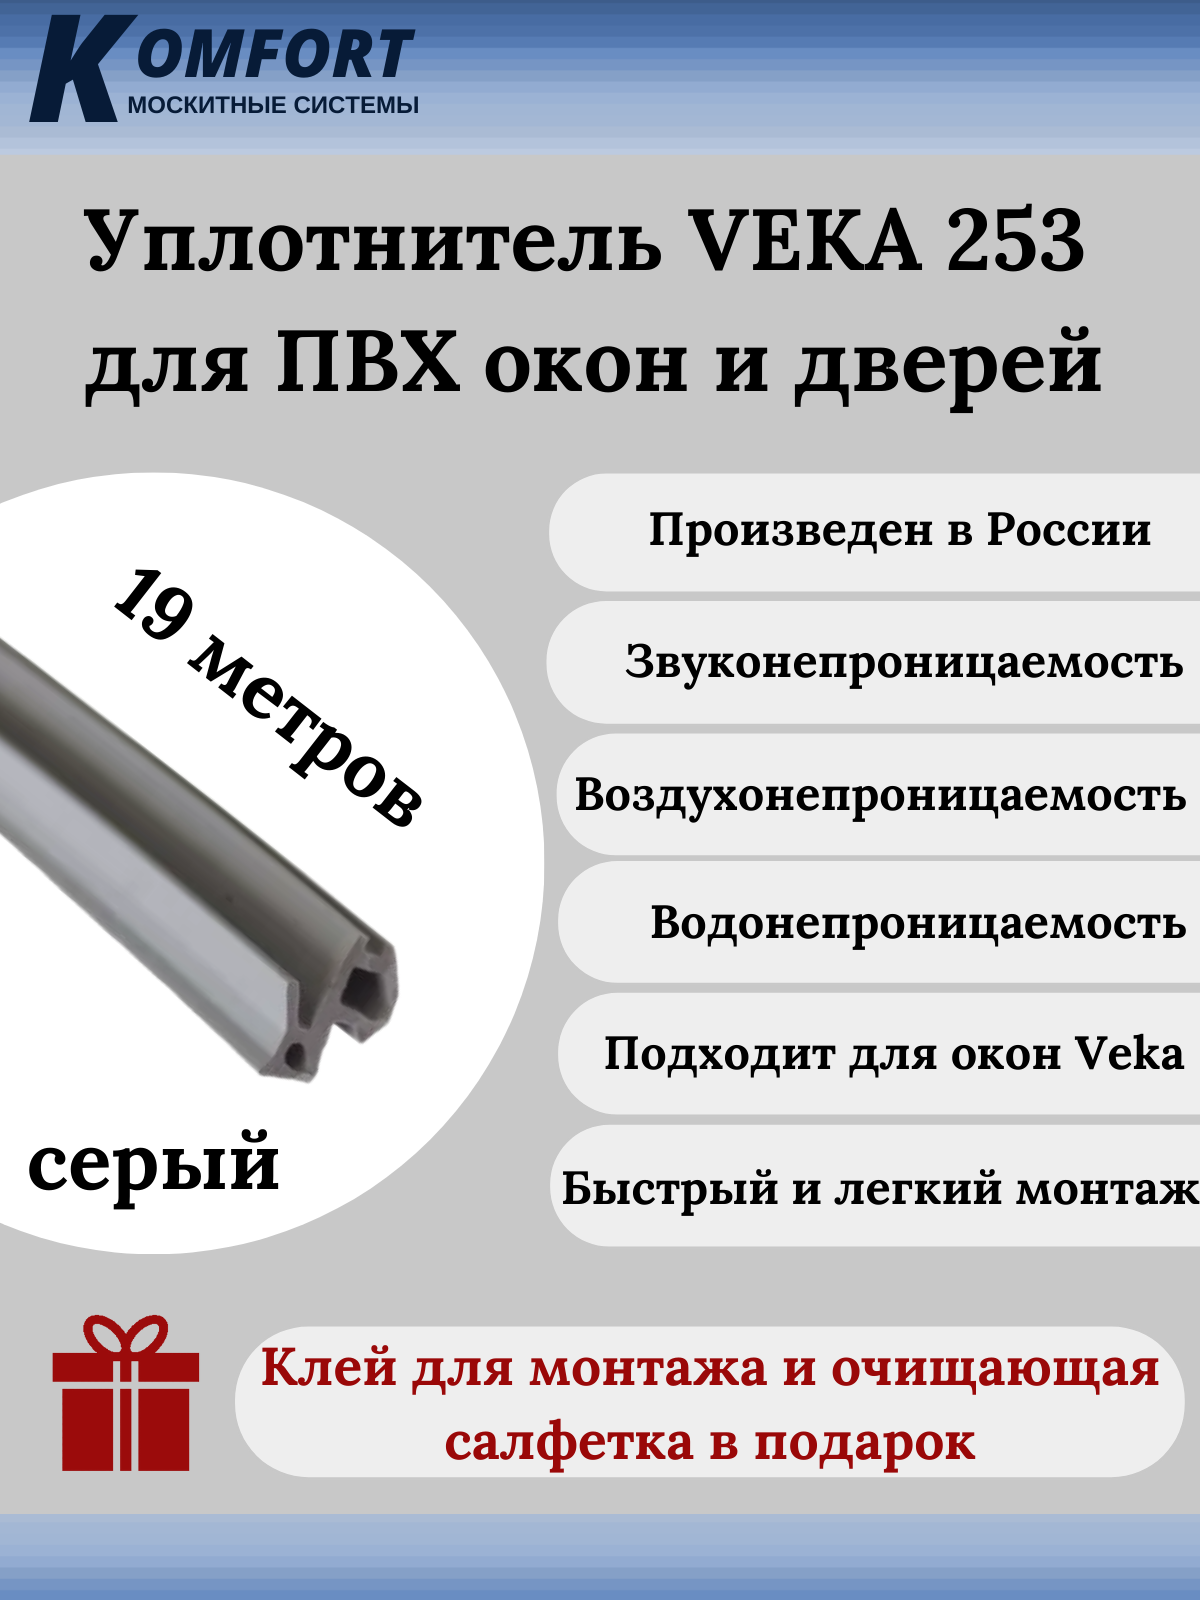 Уплотнитель VEKA 253 для окон и дверей ПВХ усиленный серый ТЭП 19м уплотнитель для окон и дверей пвх veka komfort москитные системы